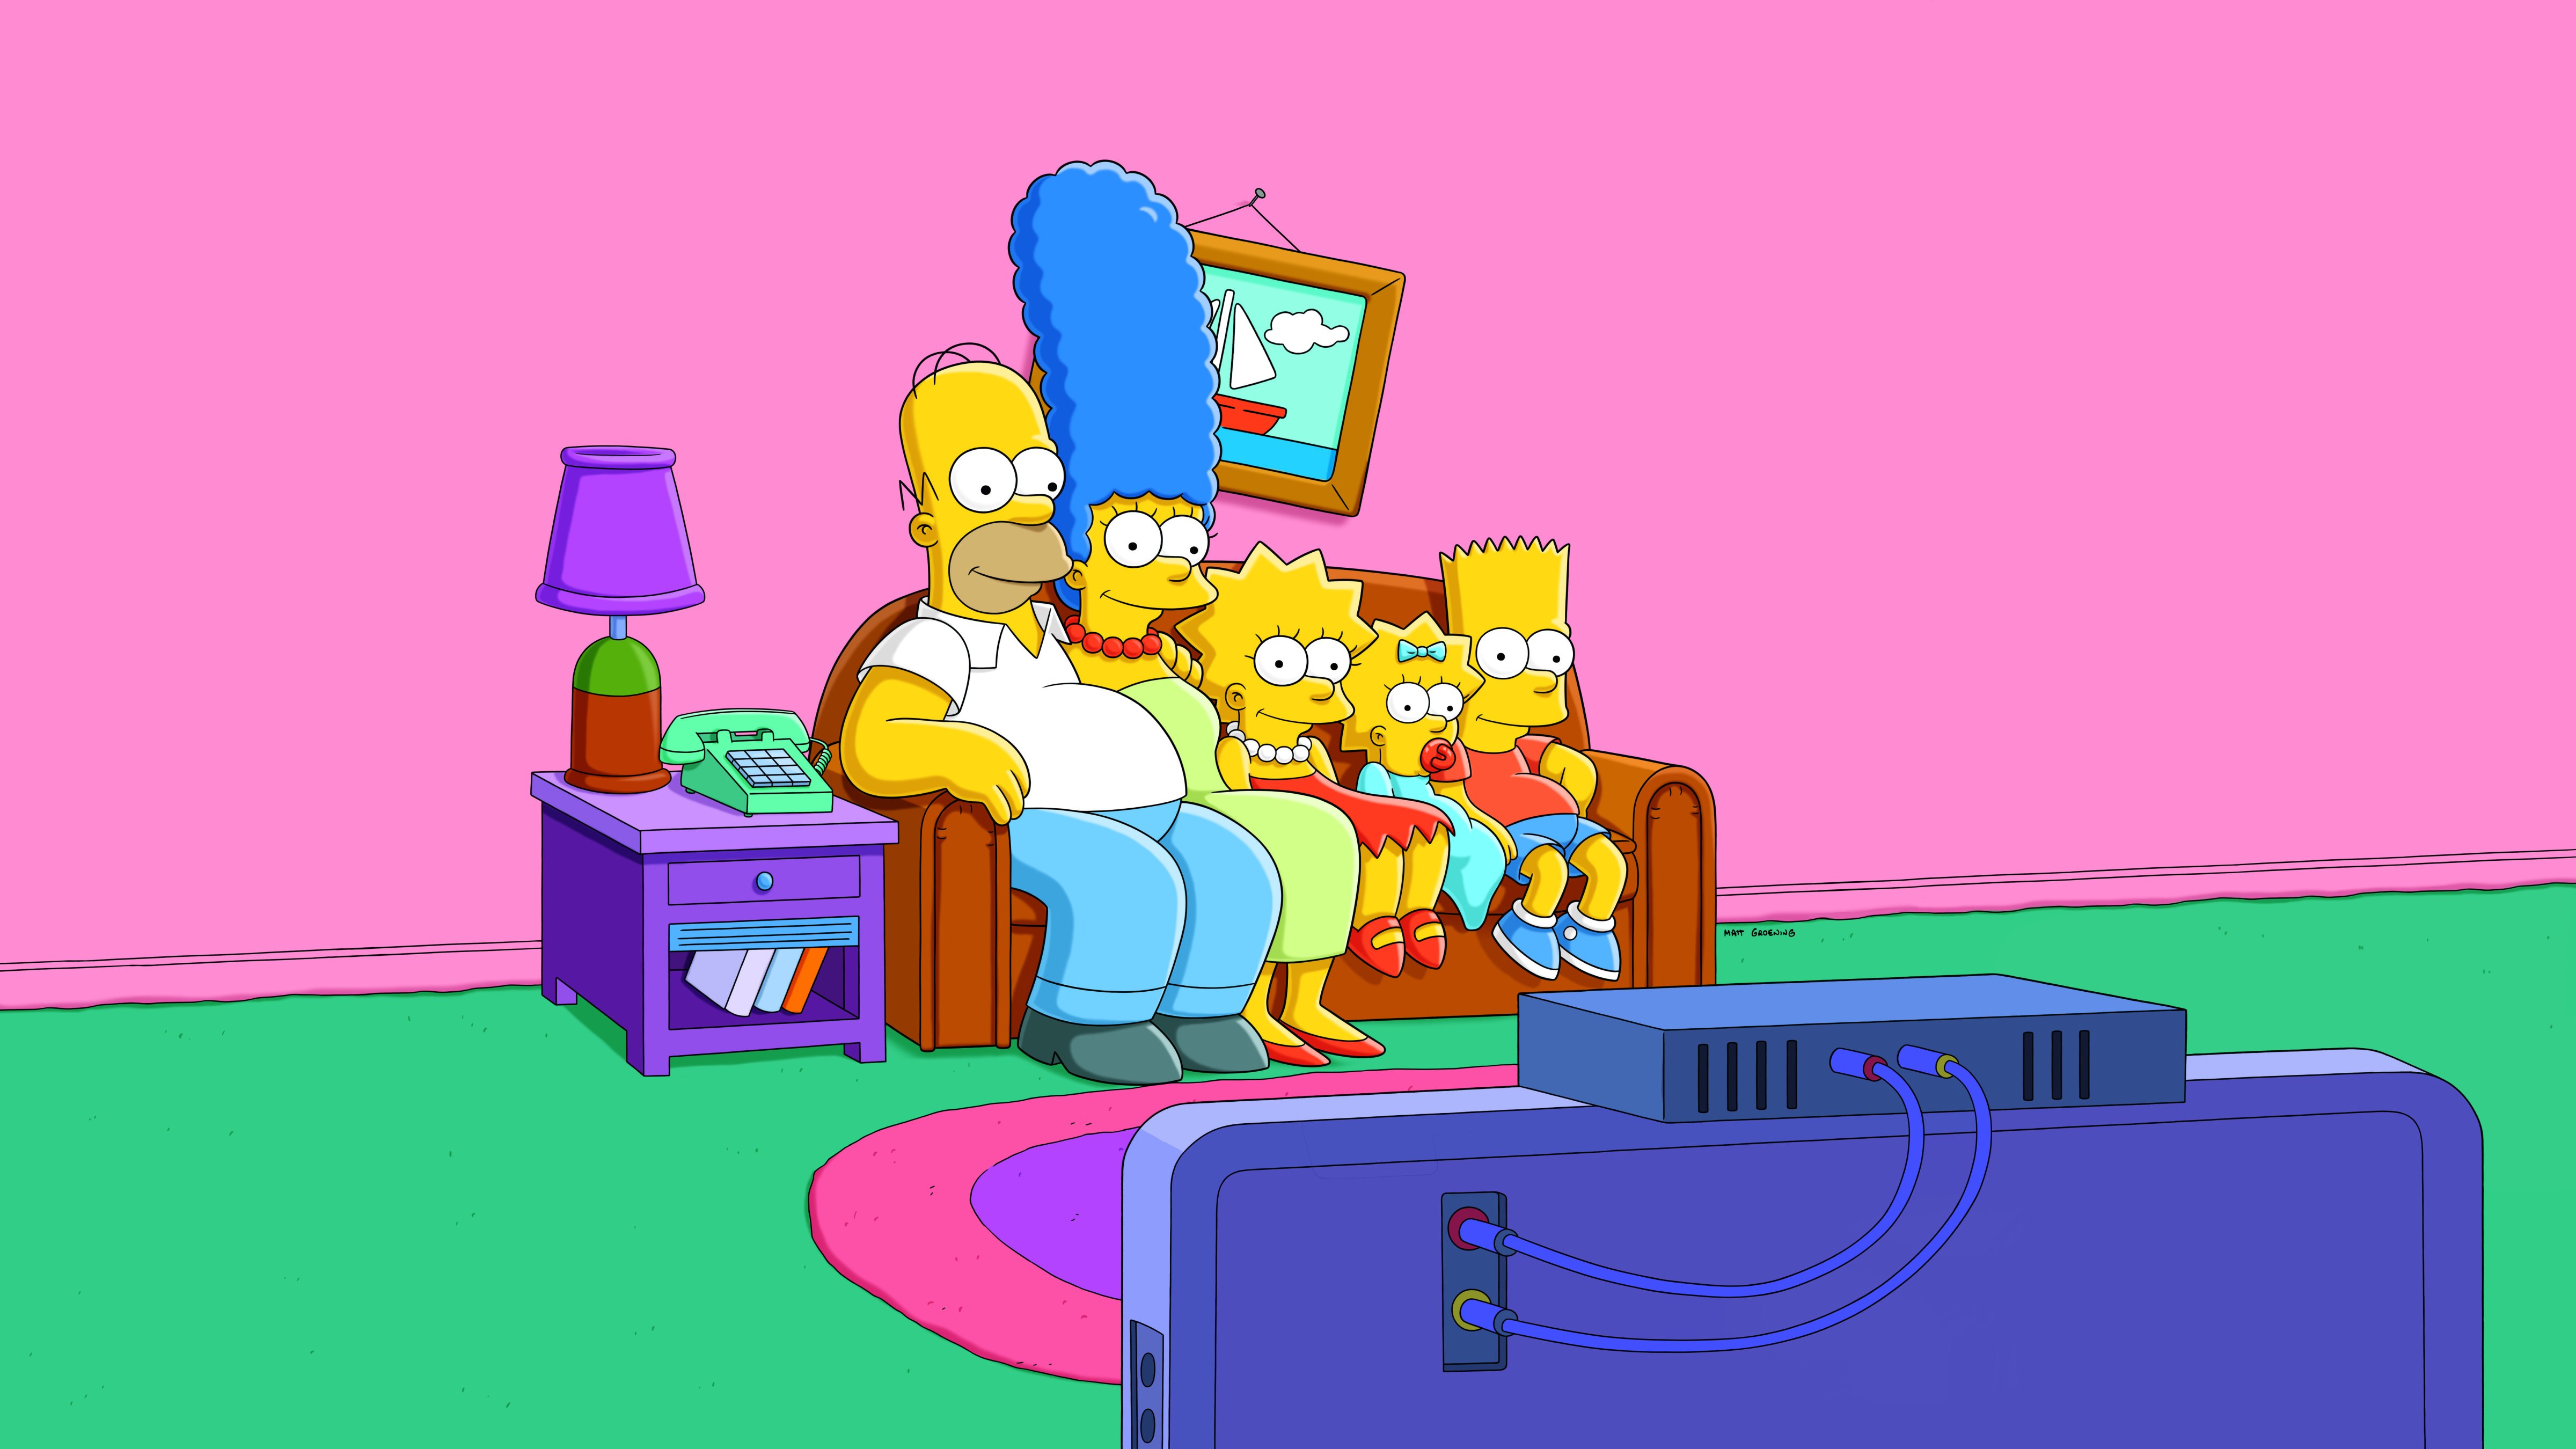 SimpsonsBG_2013_R1_Sofa_hires2